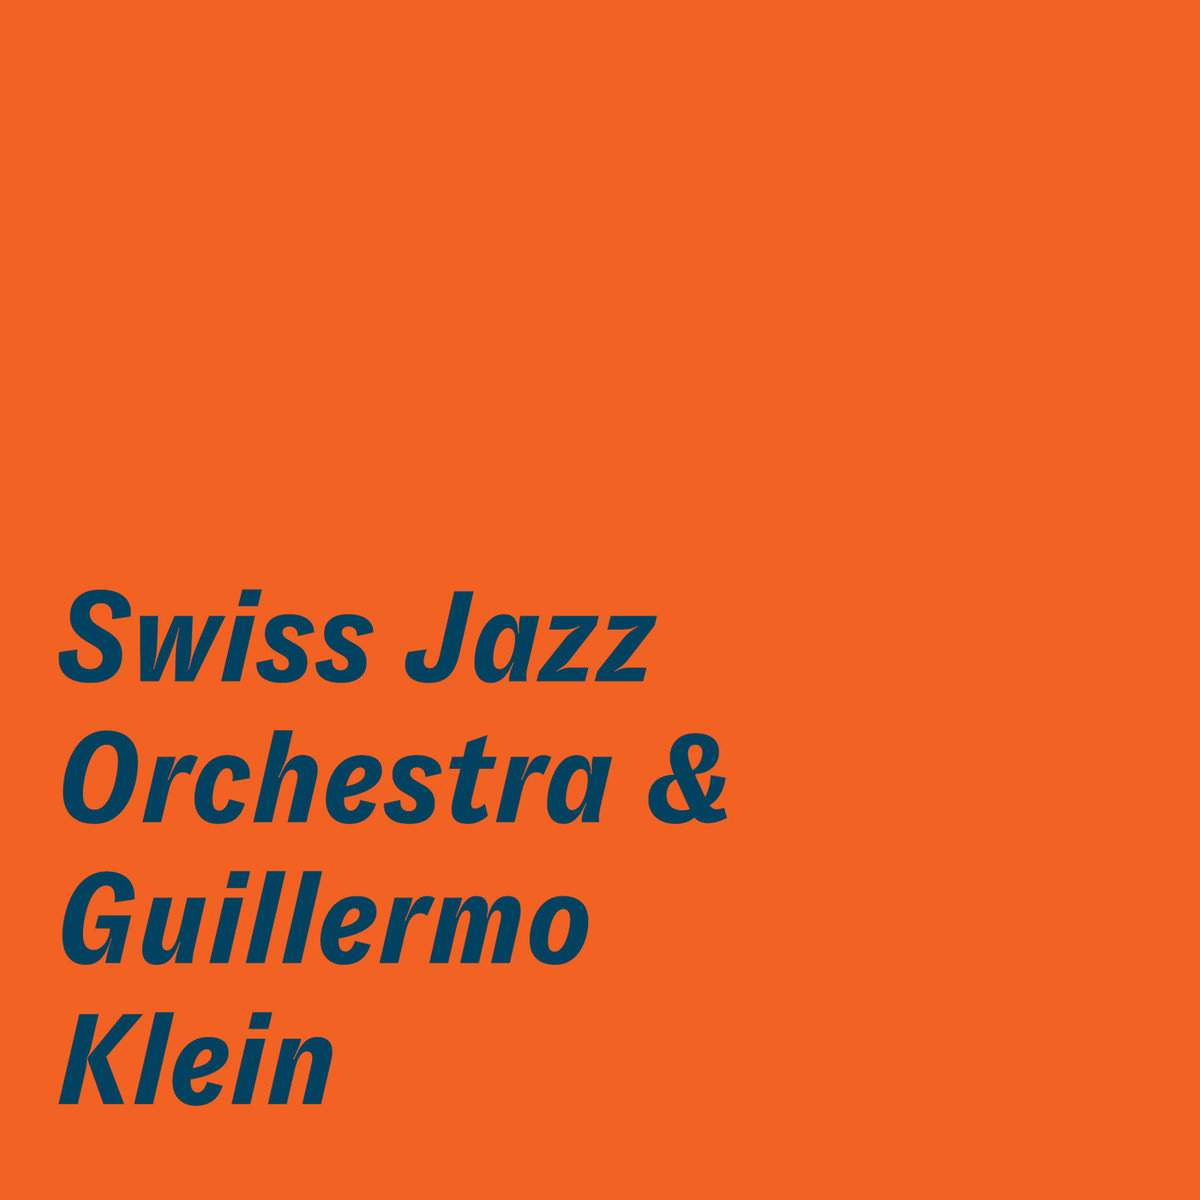 Swiss Jazz Orchestra – Swiss Jazz Orchestra & Guillermo Klein (2019) [FLAC 24bit/96kHz]